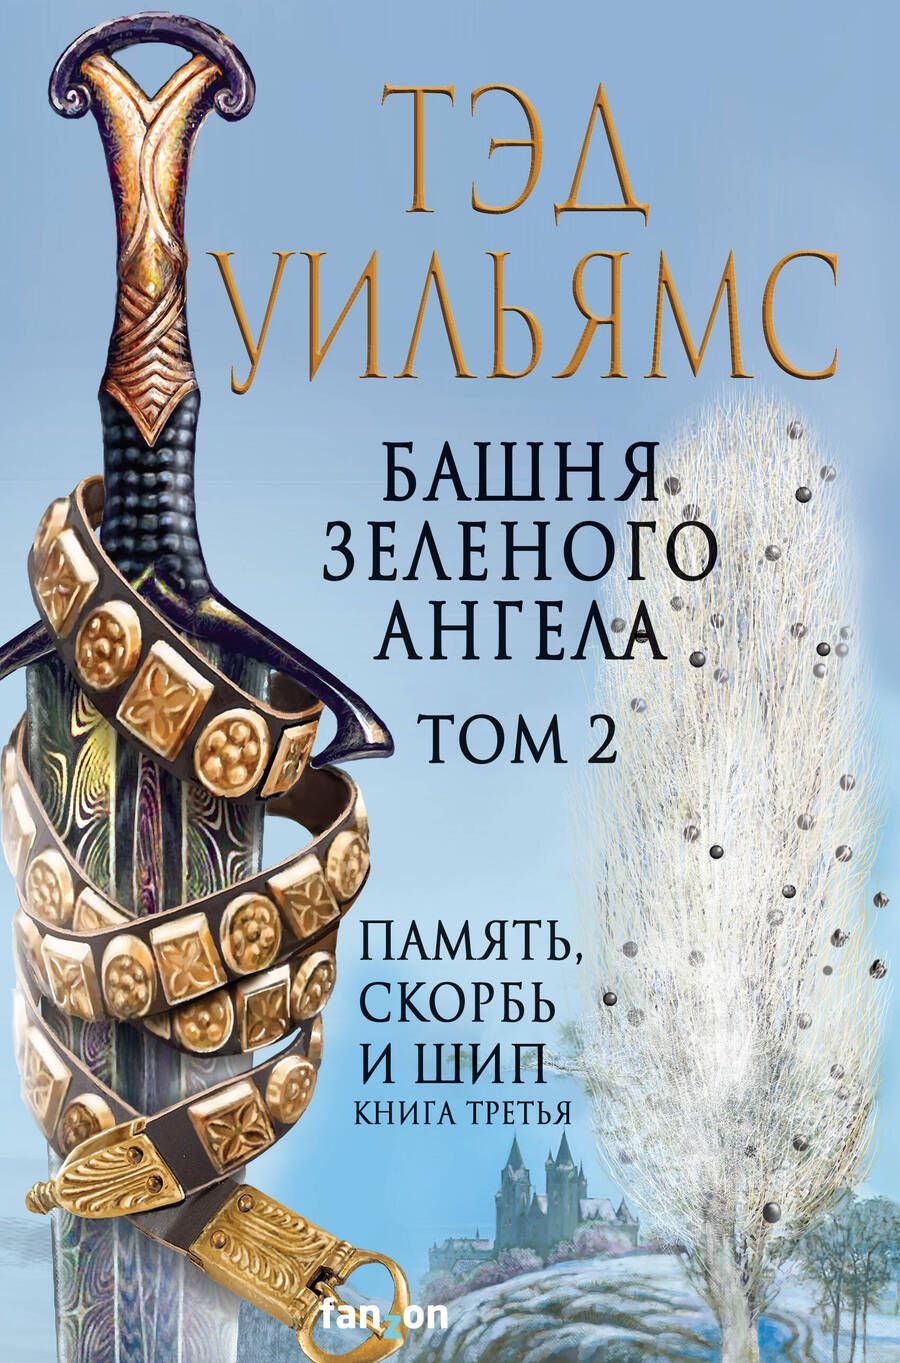 Обложка книги "Уильямс: Башня Зеленого Ангела. Том 2"